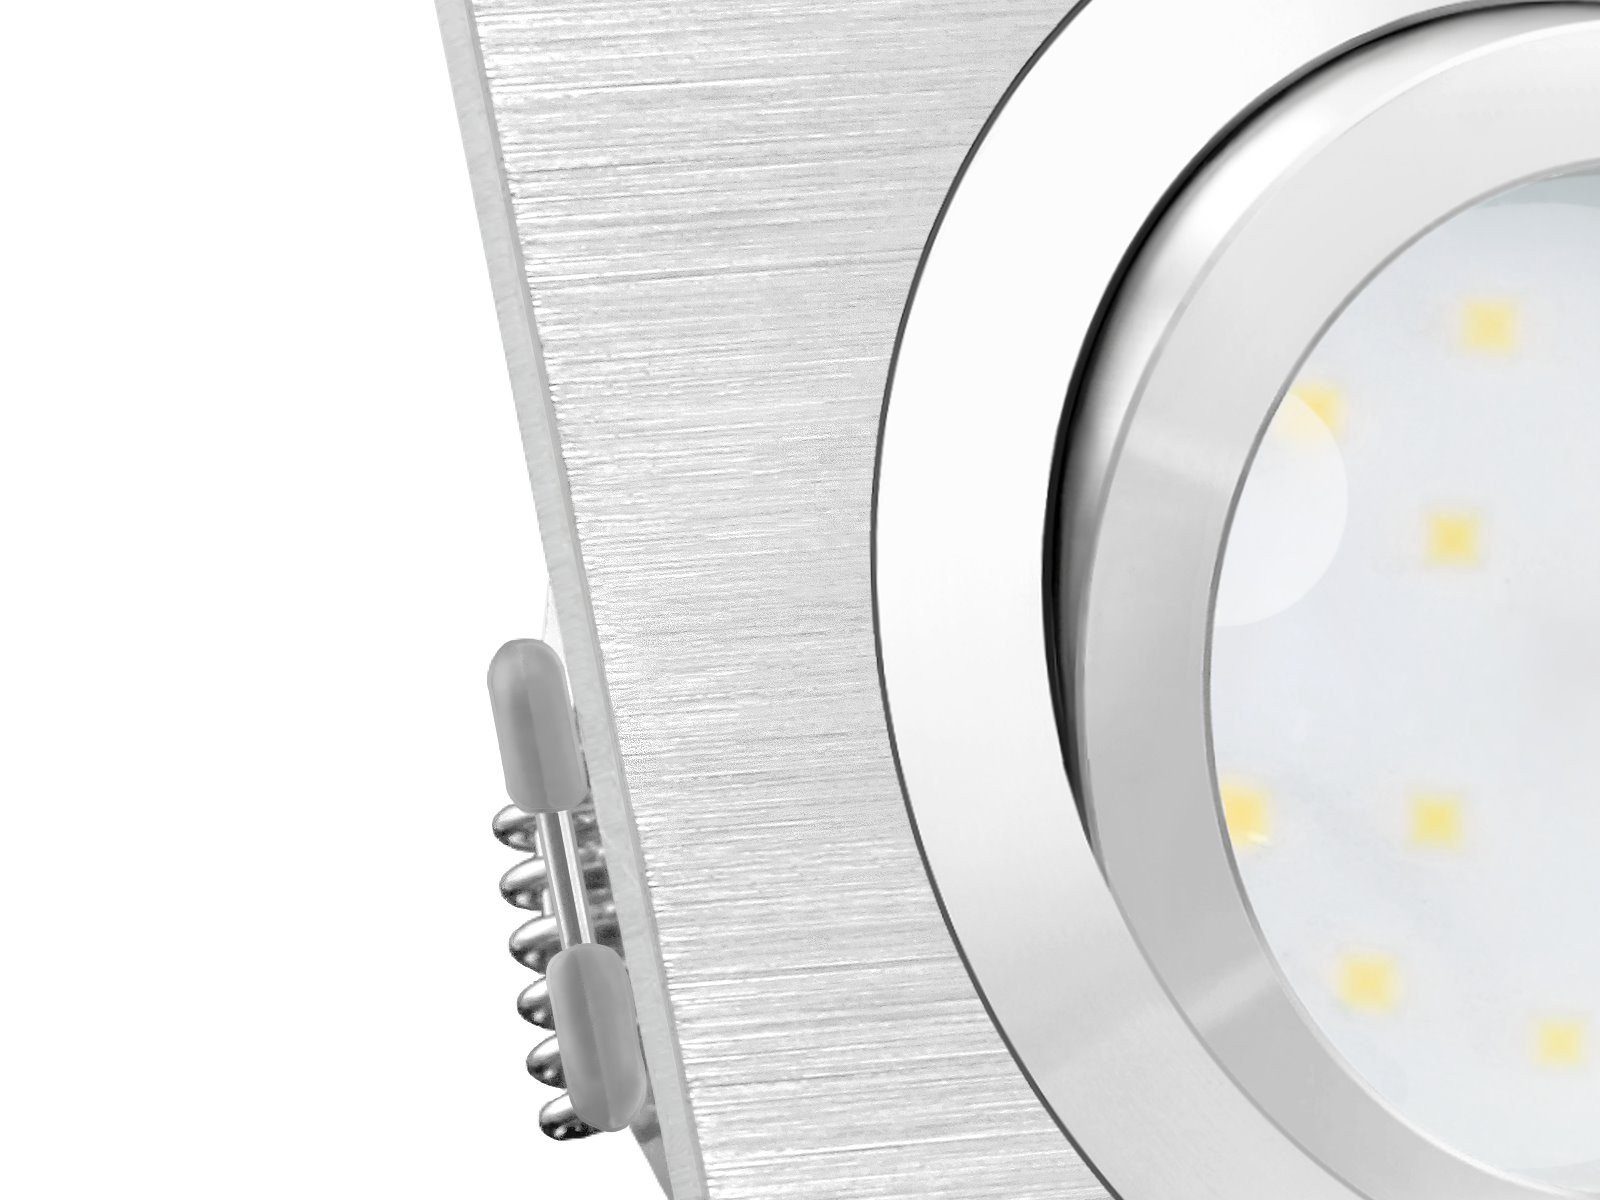 SSC-LUXon LED Einbaustrahler LED-Modul LED-Einbauspot schwenkbar flach QF-2 230V, Warmweiß Alu mit SMD, 5W